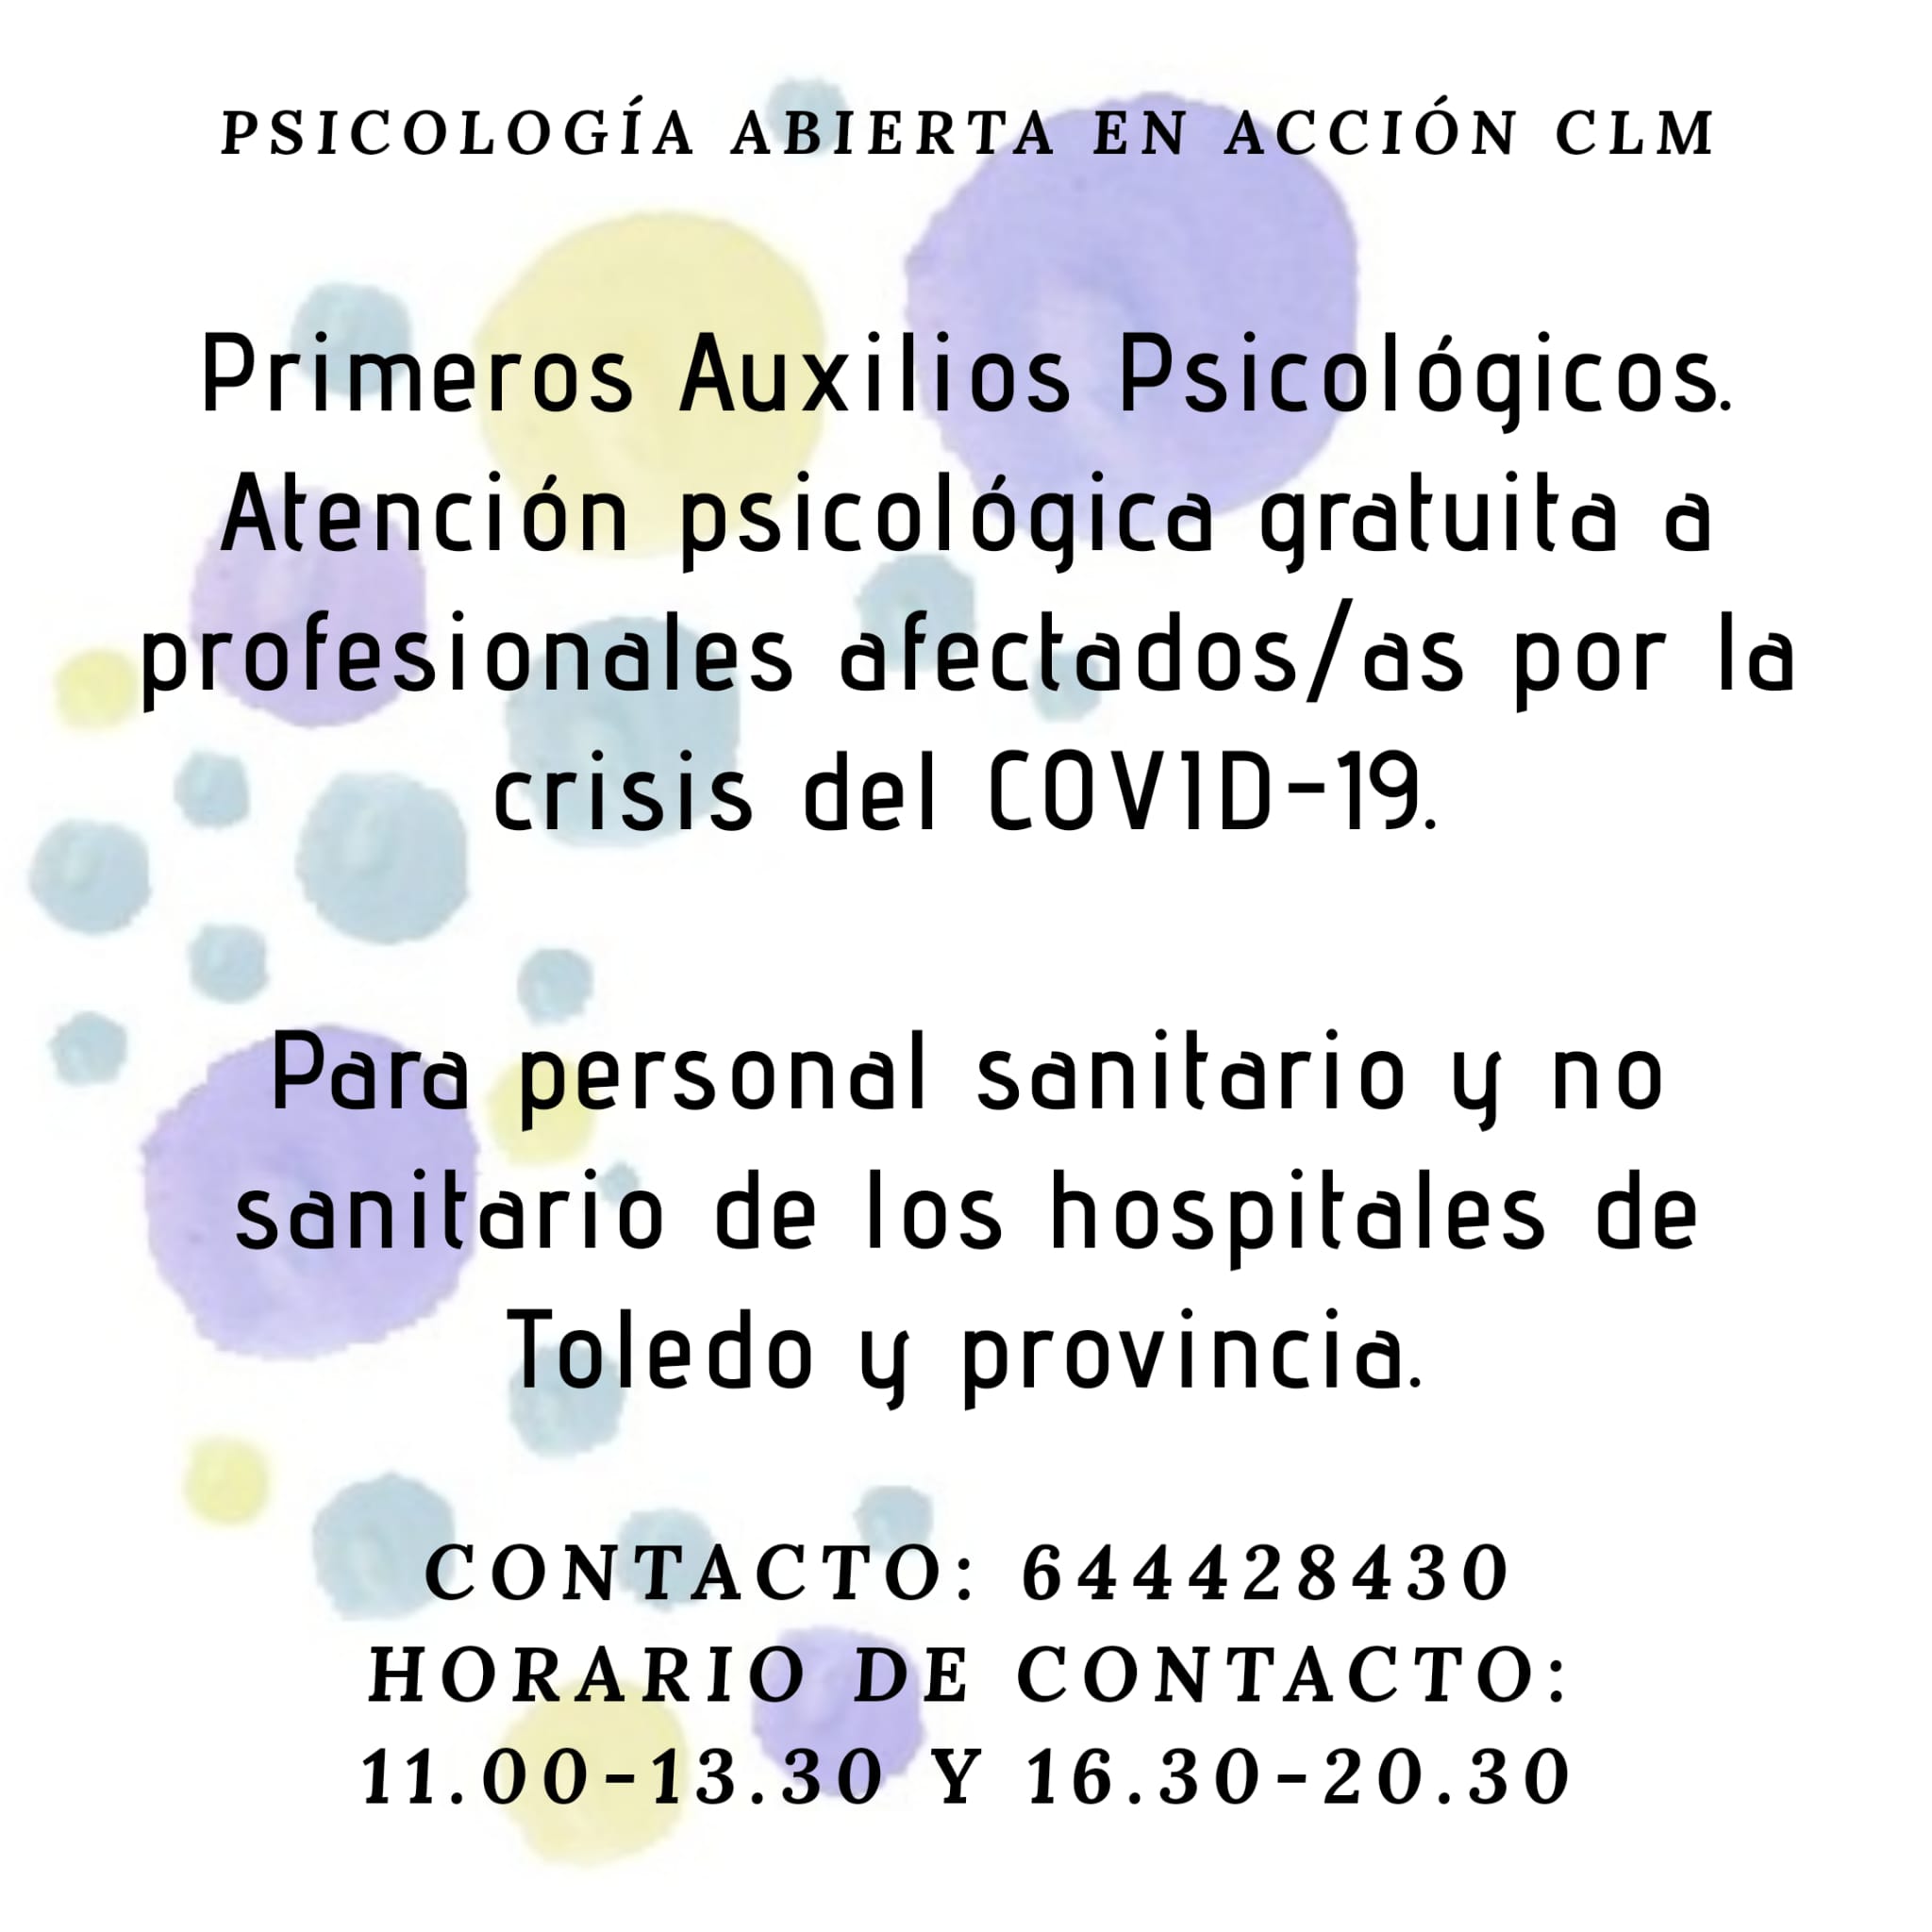 Asociación Psicología abierta en acción CLM. Atención psicológica gratuita para profesioales afectados/as por la crisis del COVID-19